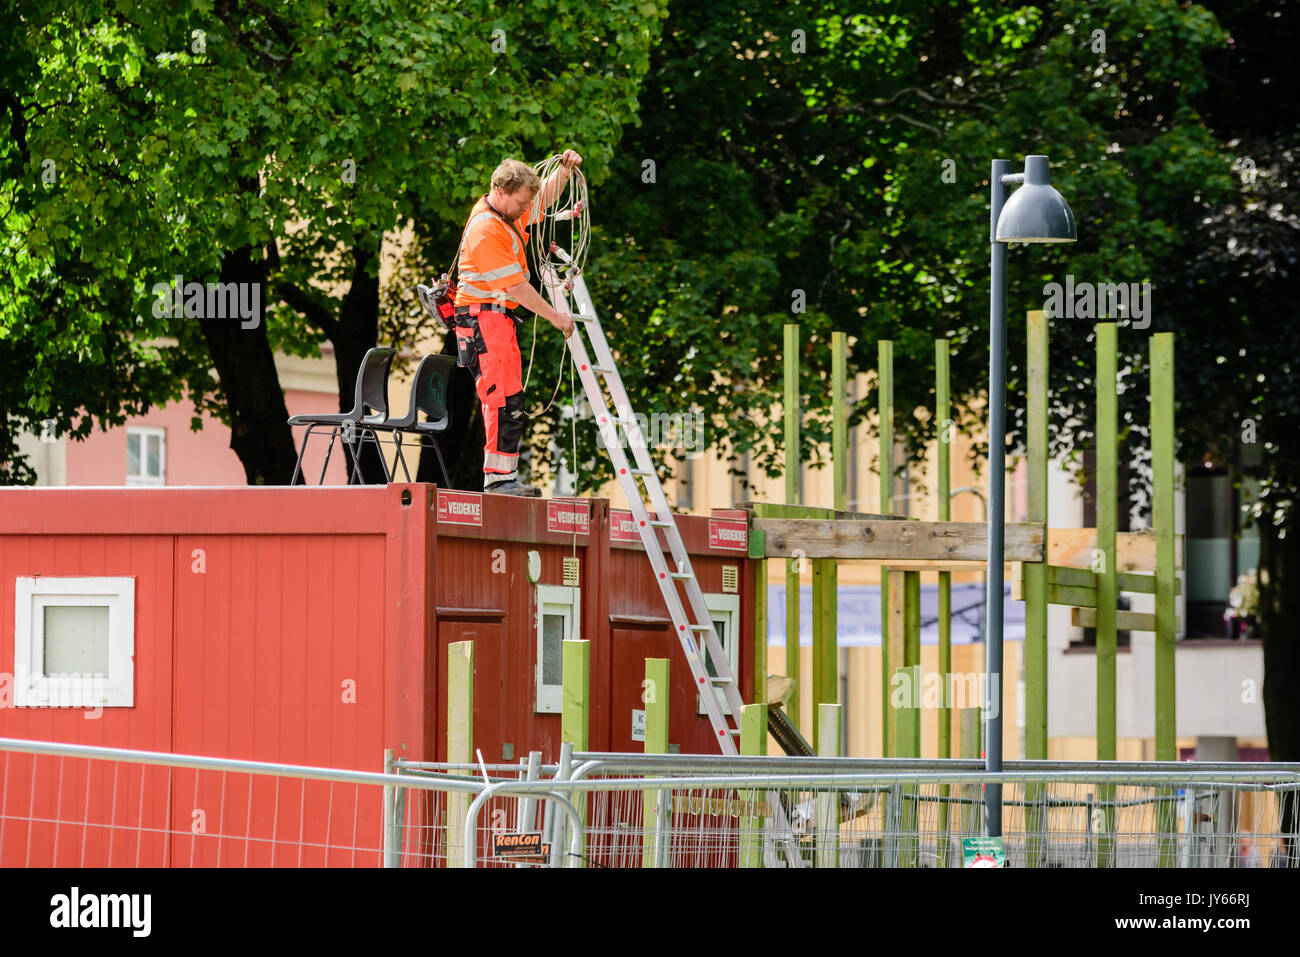 Kristiansand, Noruega - Agosto 1, 2017: Documental de la vida cotidiana en la ciudad. Trabajador de la construcción en toolshed bobinado del techo de un cable eléctrico. Ladde Foto de stock